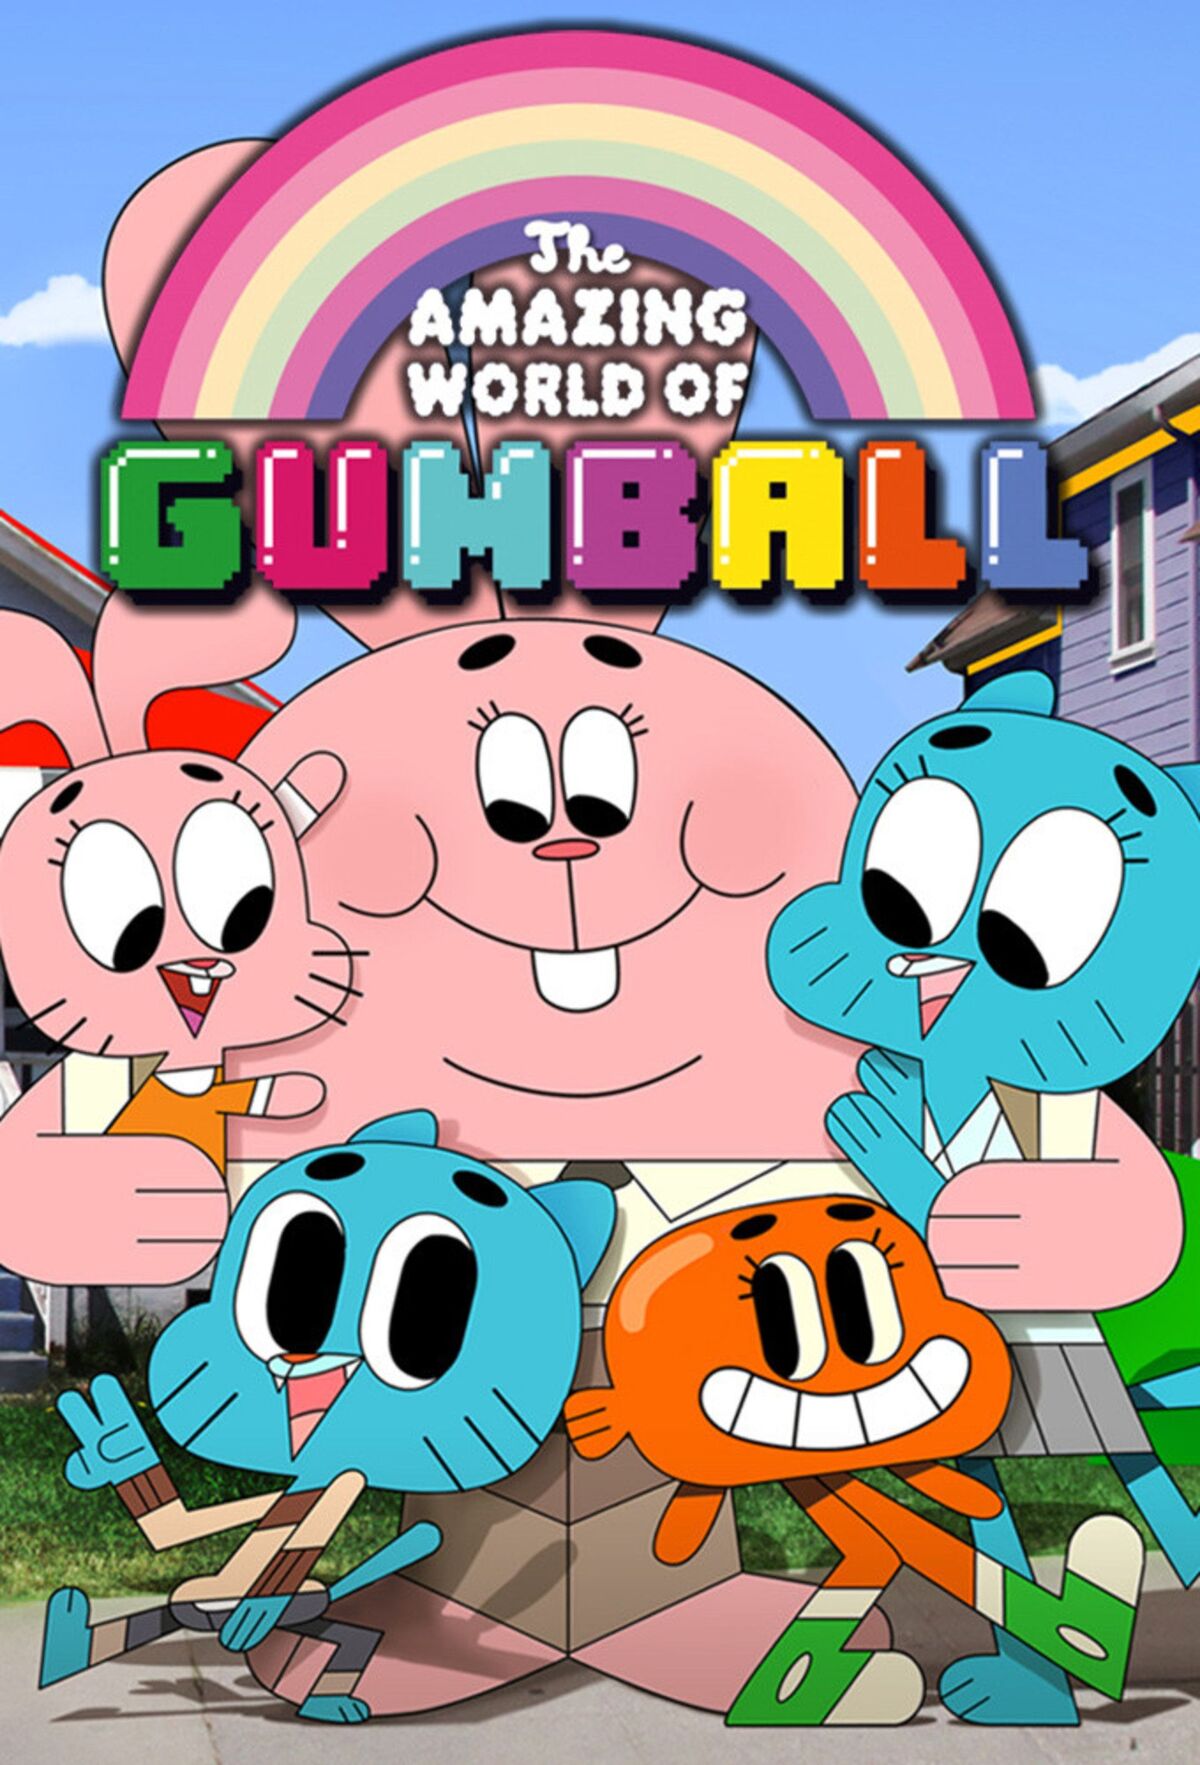 Fshare] - The Amazing World of Gumball - Thế Giới Kỳ Diệu Của Gumball  Season 1,2,3,4 Full HD 1080p | HDVietnam - Hơn cả đam mê